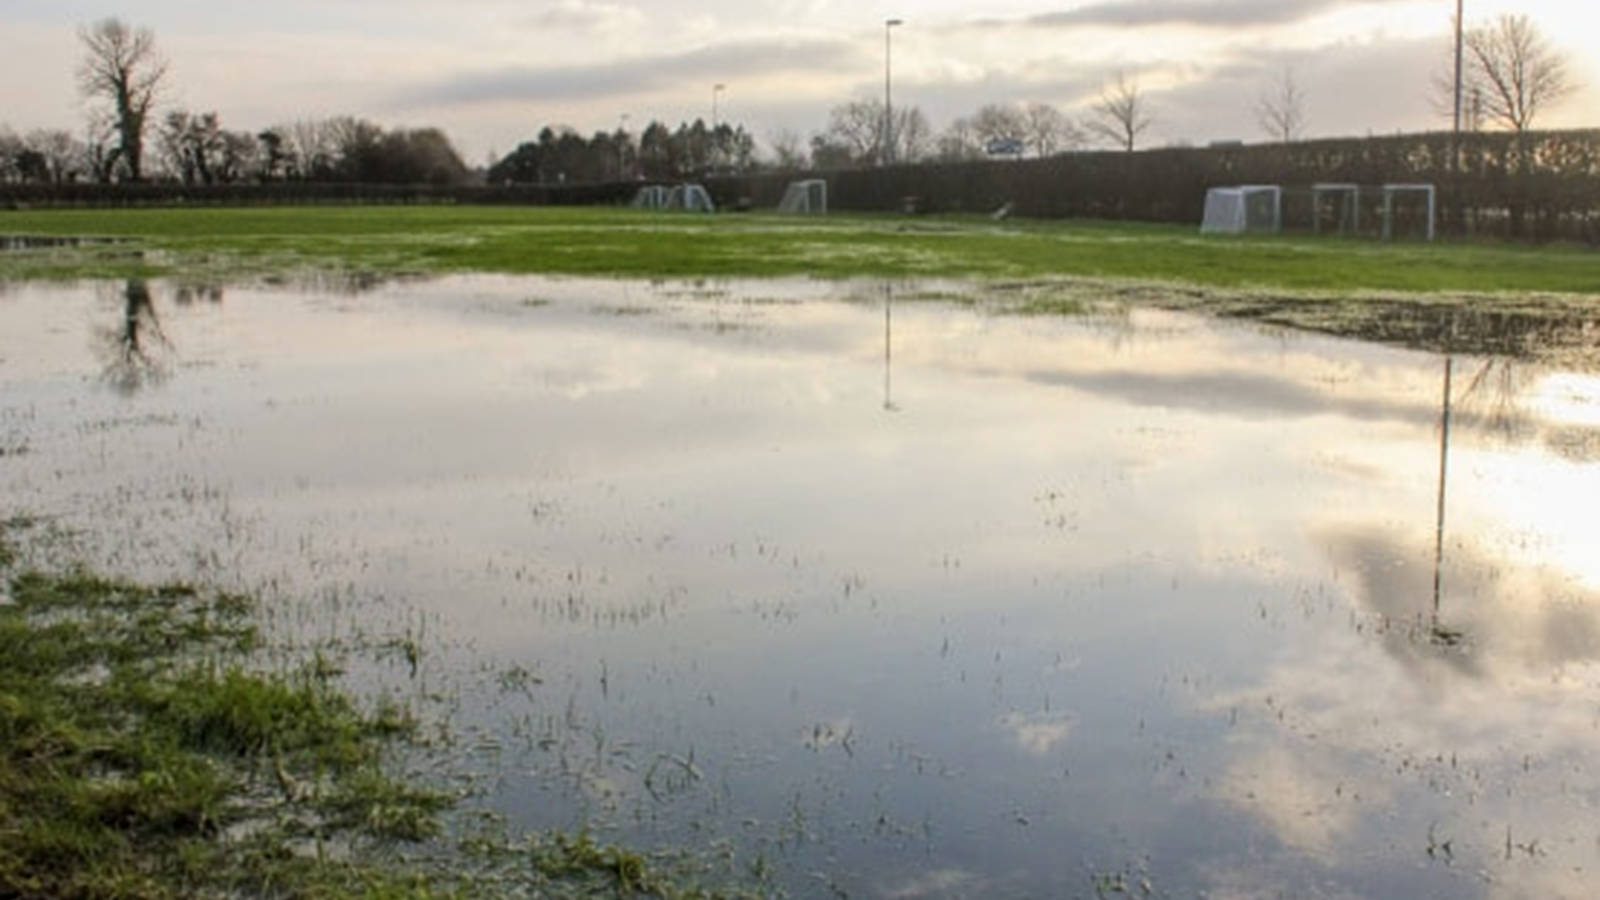 Konsekvenser af den våde vinter: Alle klubber opfordres til at være proaktive og fleksible